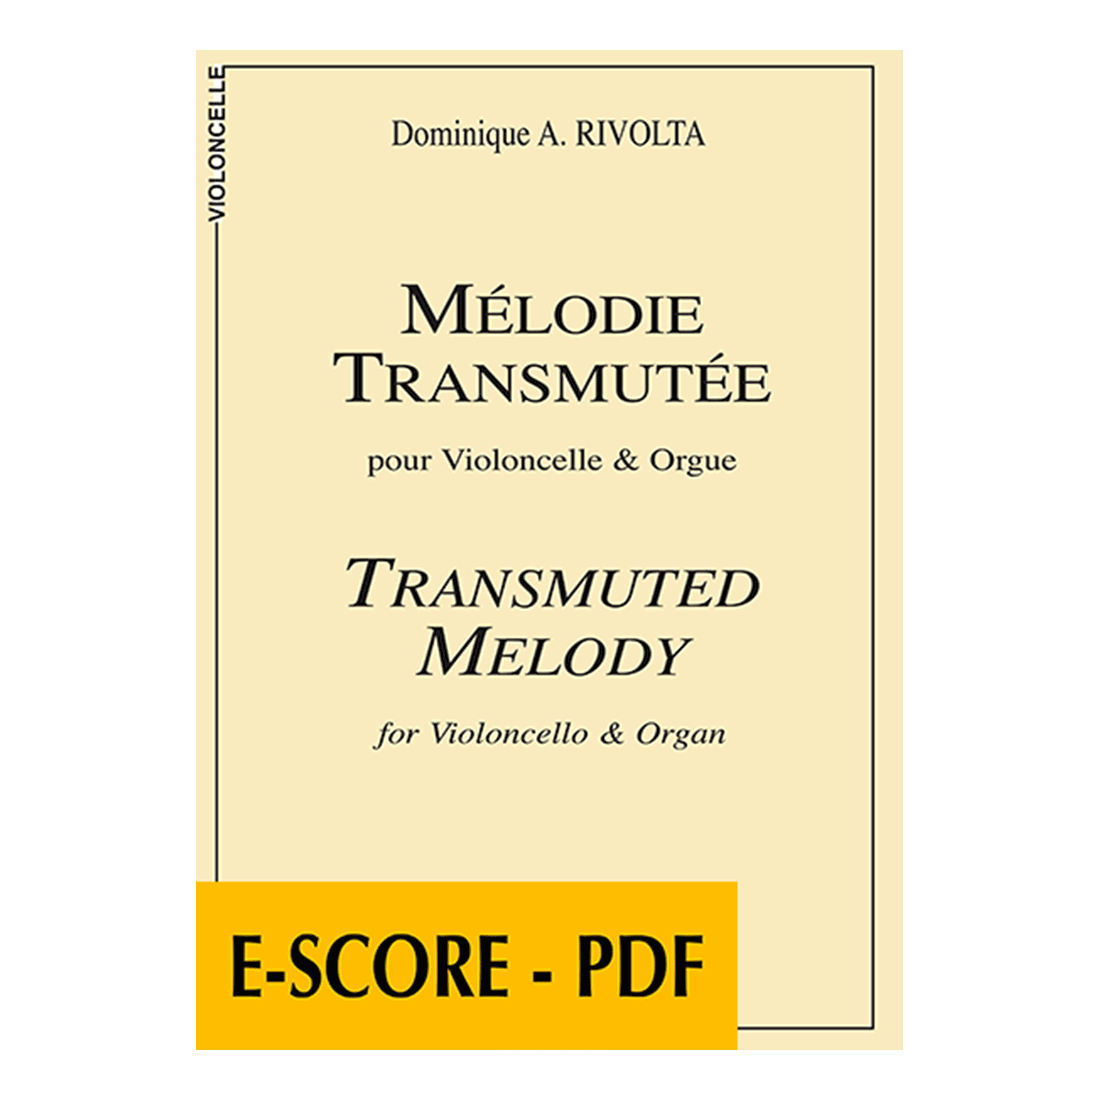 Mélodie transmutée pour violoncelle et orgue - E-score PDF